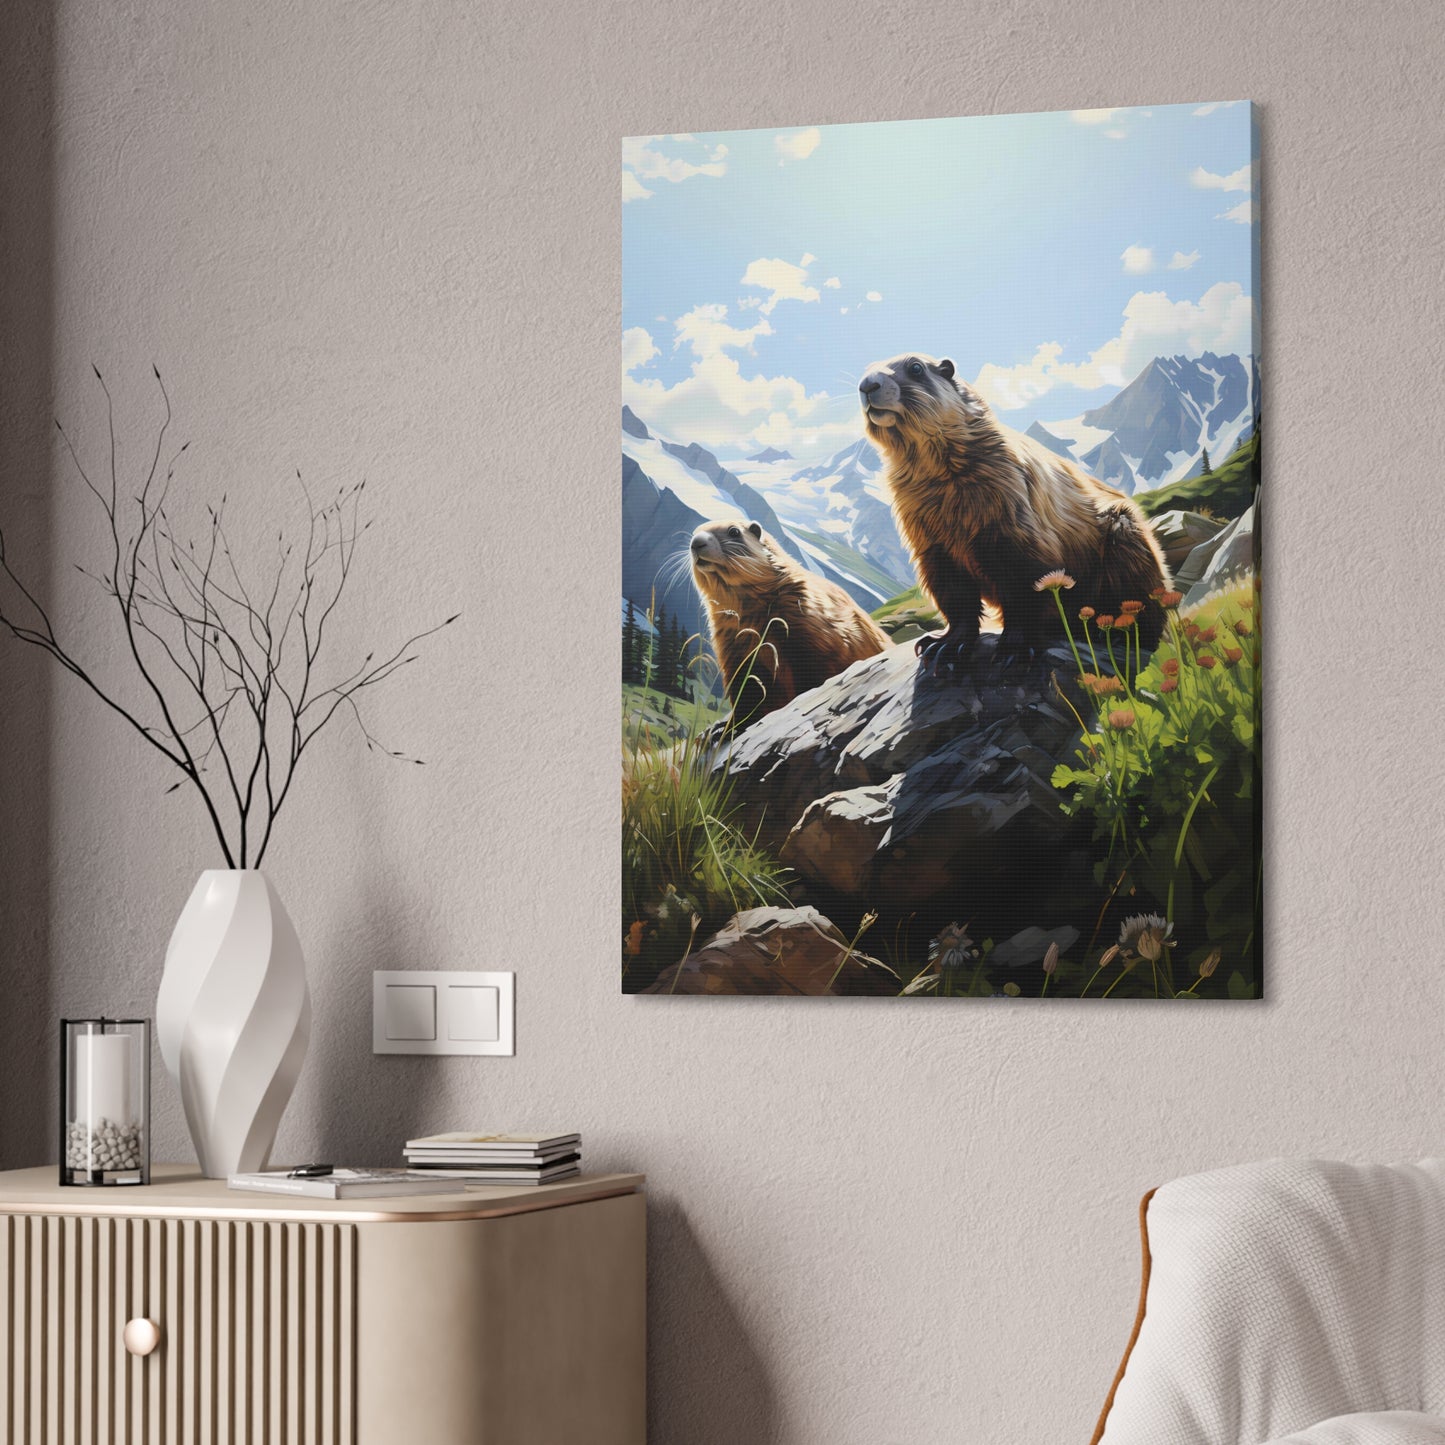 Gold Diggers - Marmots Canvas Art Print (1.5'')